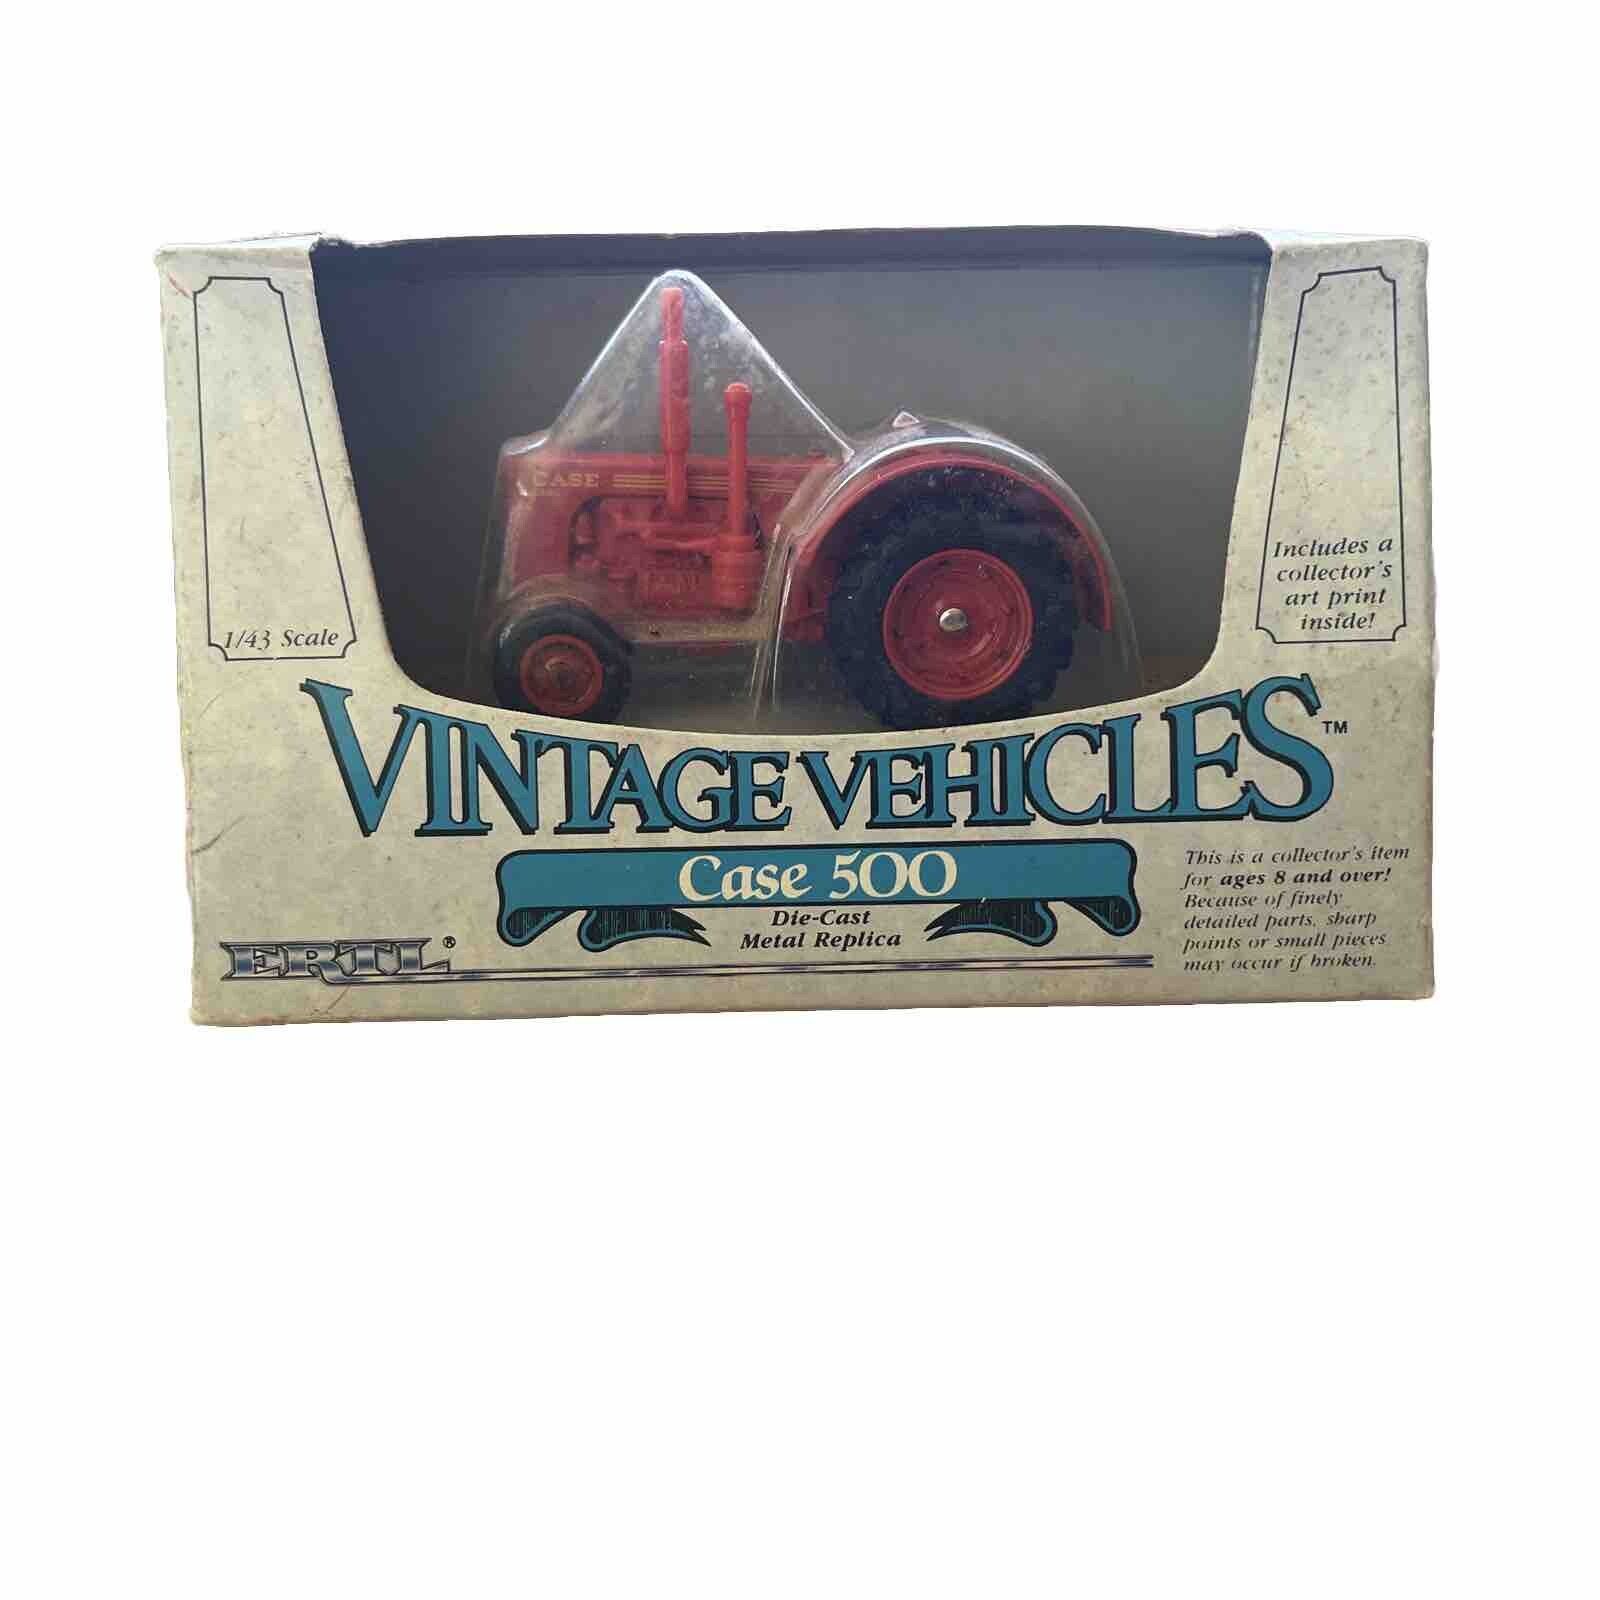 vintage vehicles Case 500